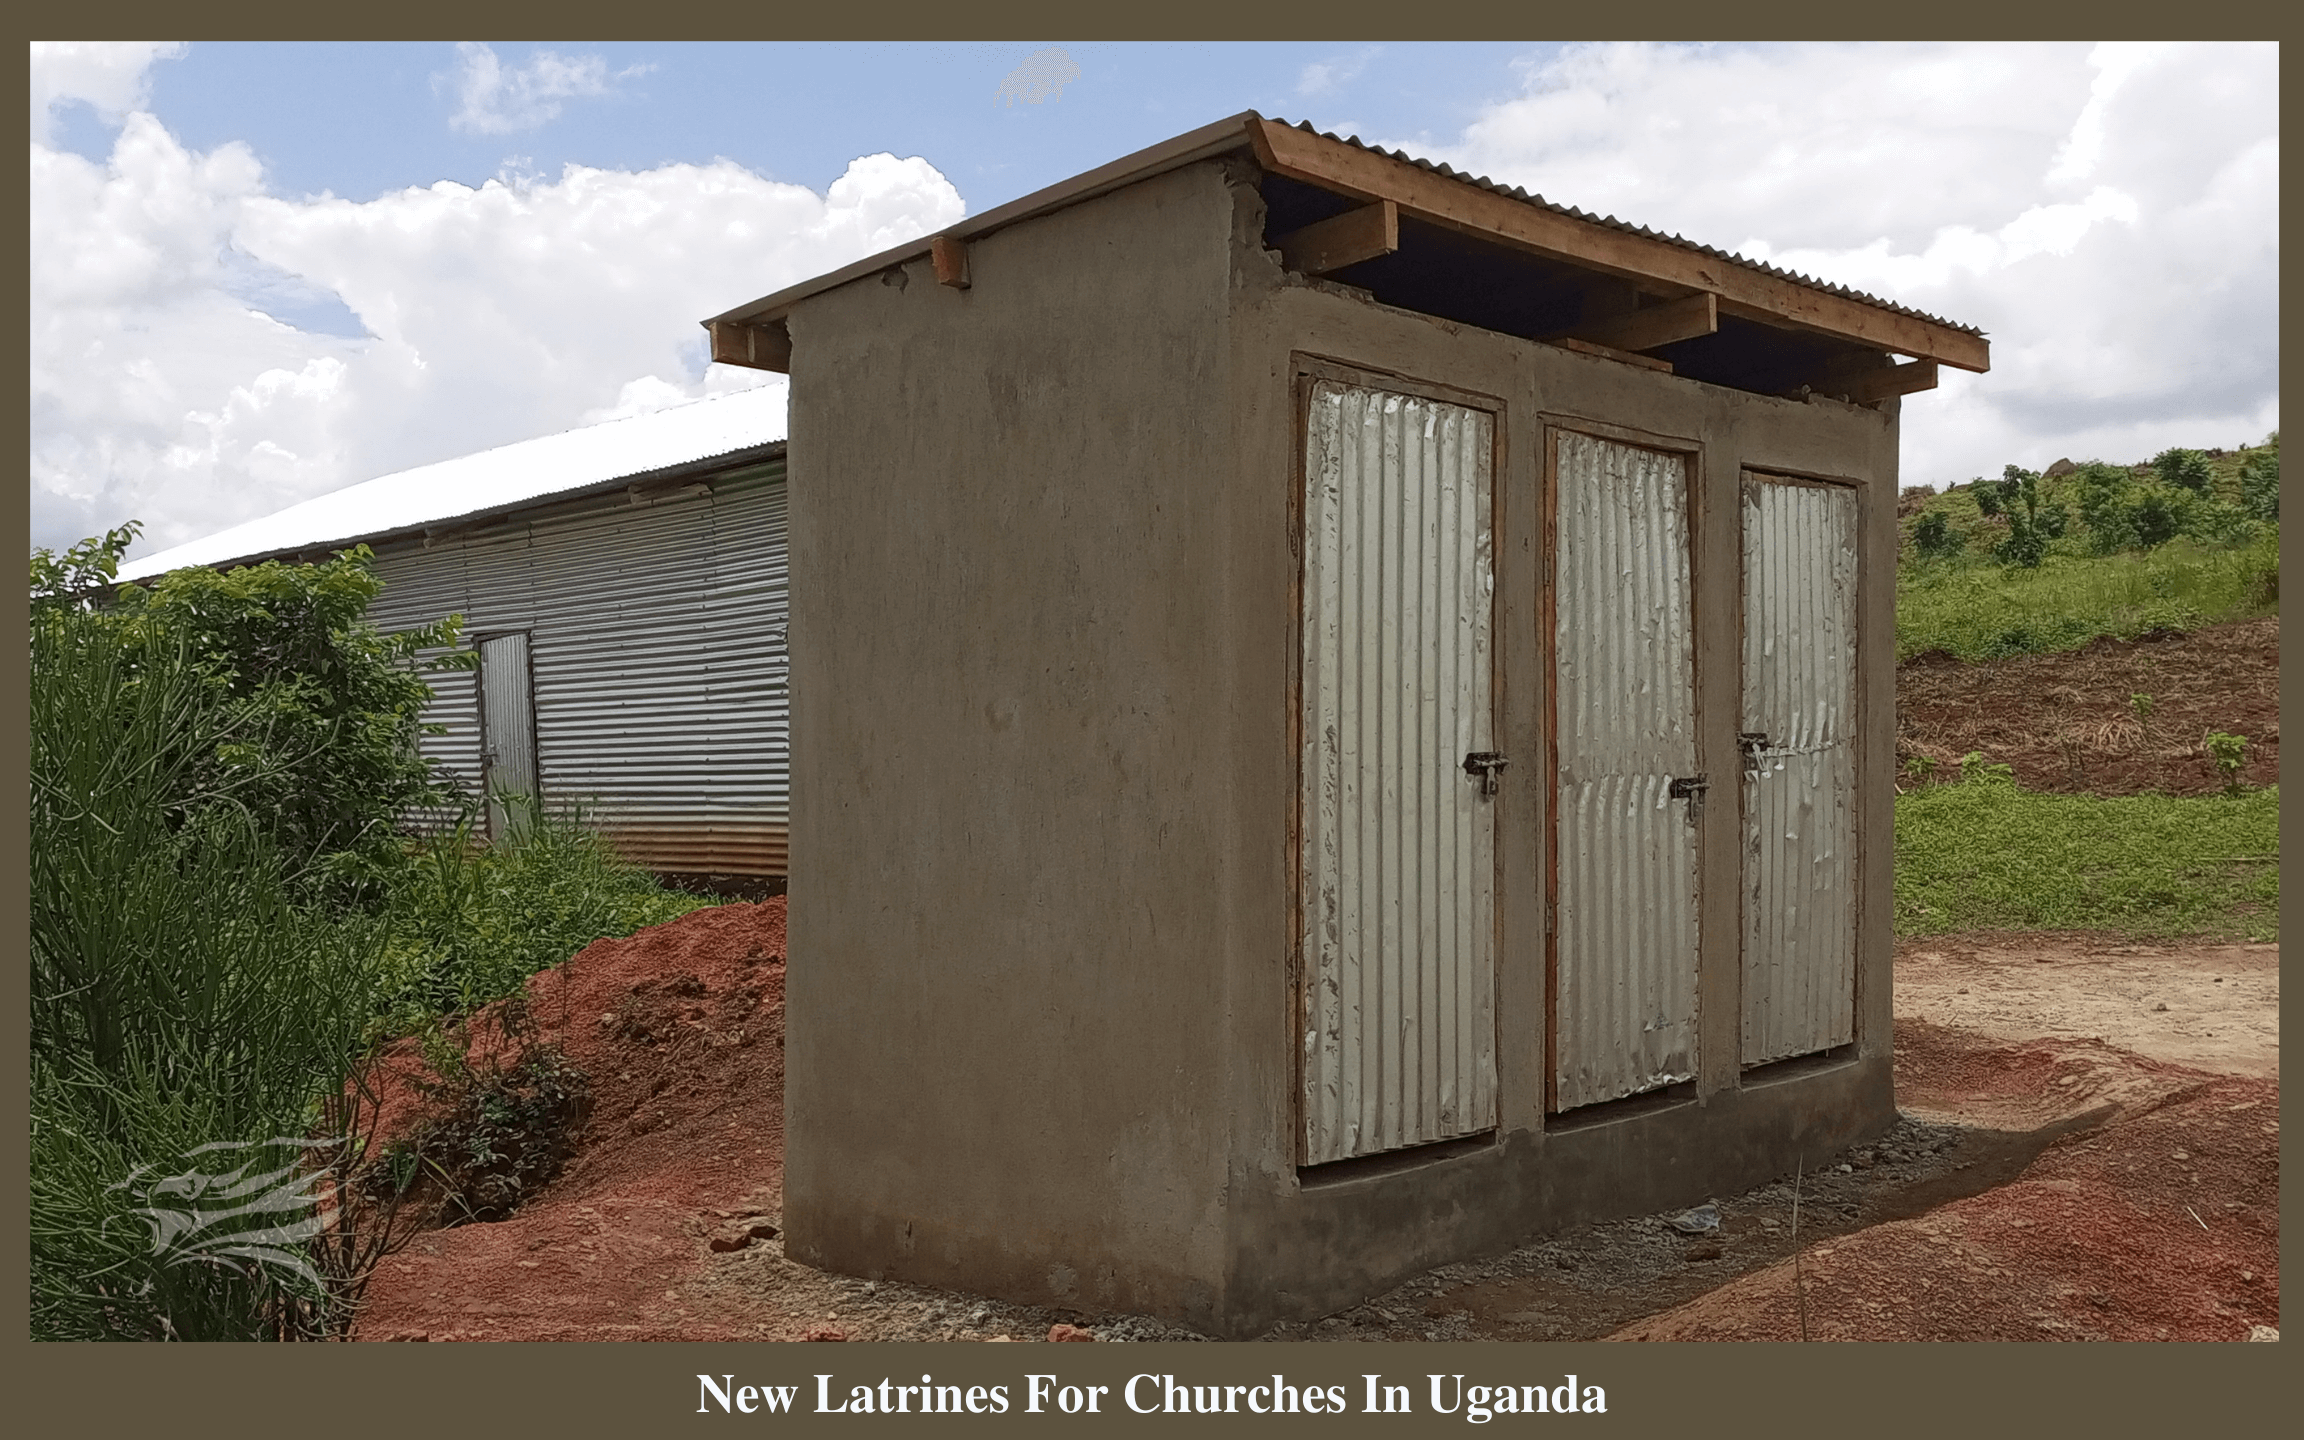 New Latrines For Churches In Uganda